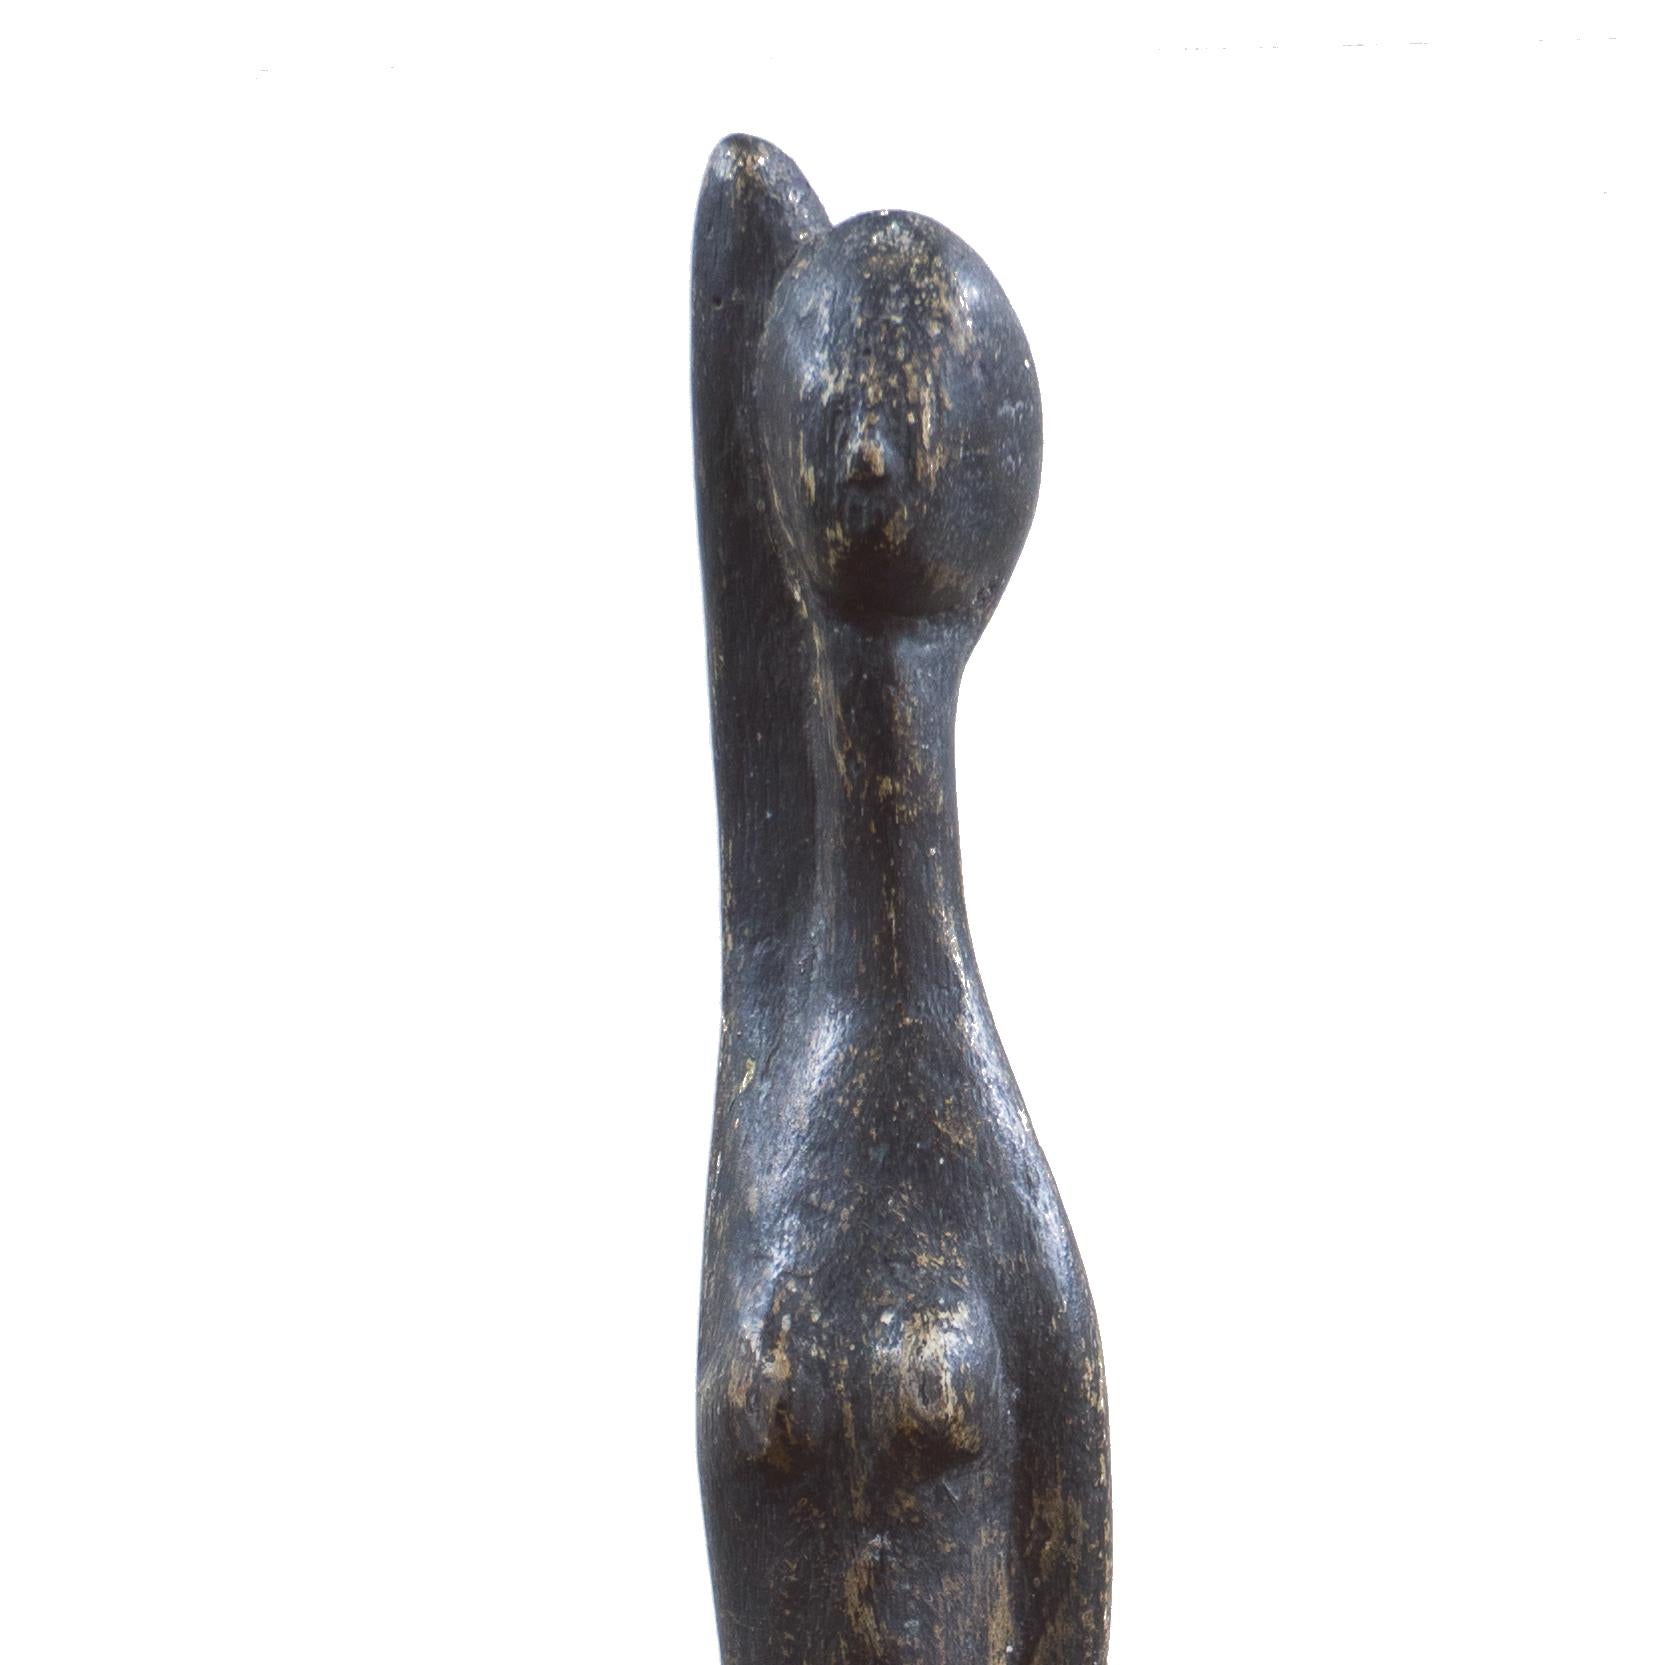  « Femme debout », sculpture moderniste, région de la baie de San Francisco, de Young Museum - Sculpture de Wedo Georgetti